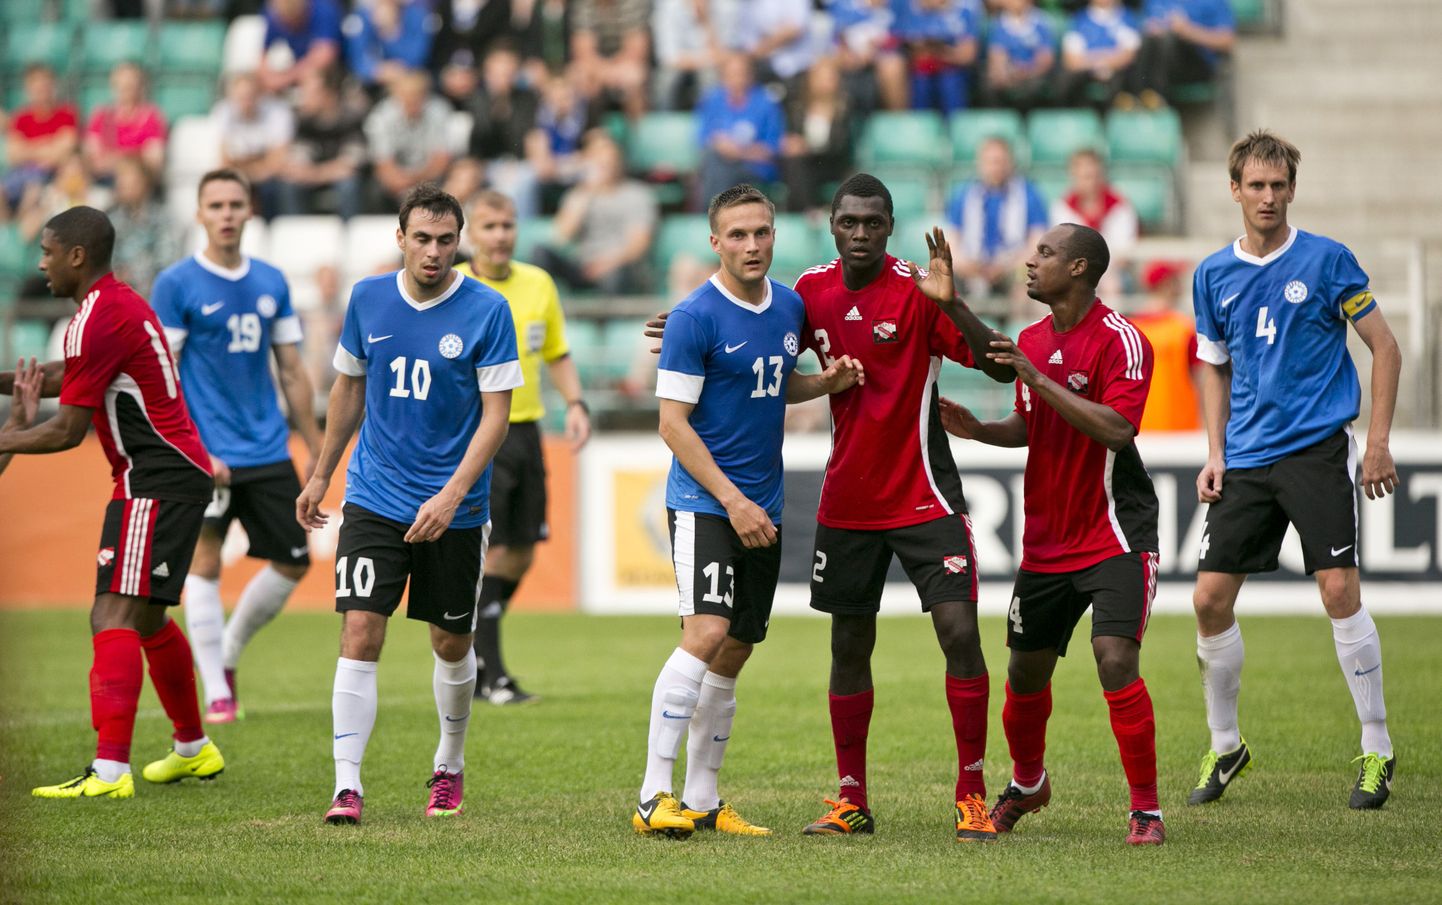 Eesti jalgpallikoondis on Trinidadi ja Tobagoga juba mänginud. Kas tulevikus võidakse vastamisi minna ka play-offis?